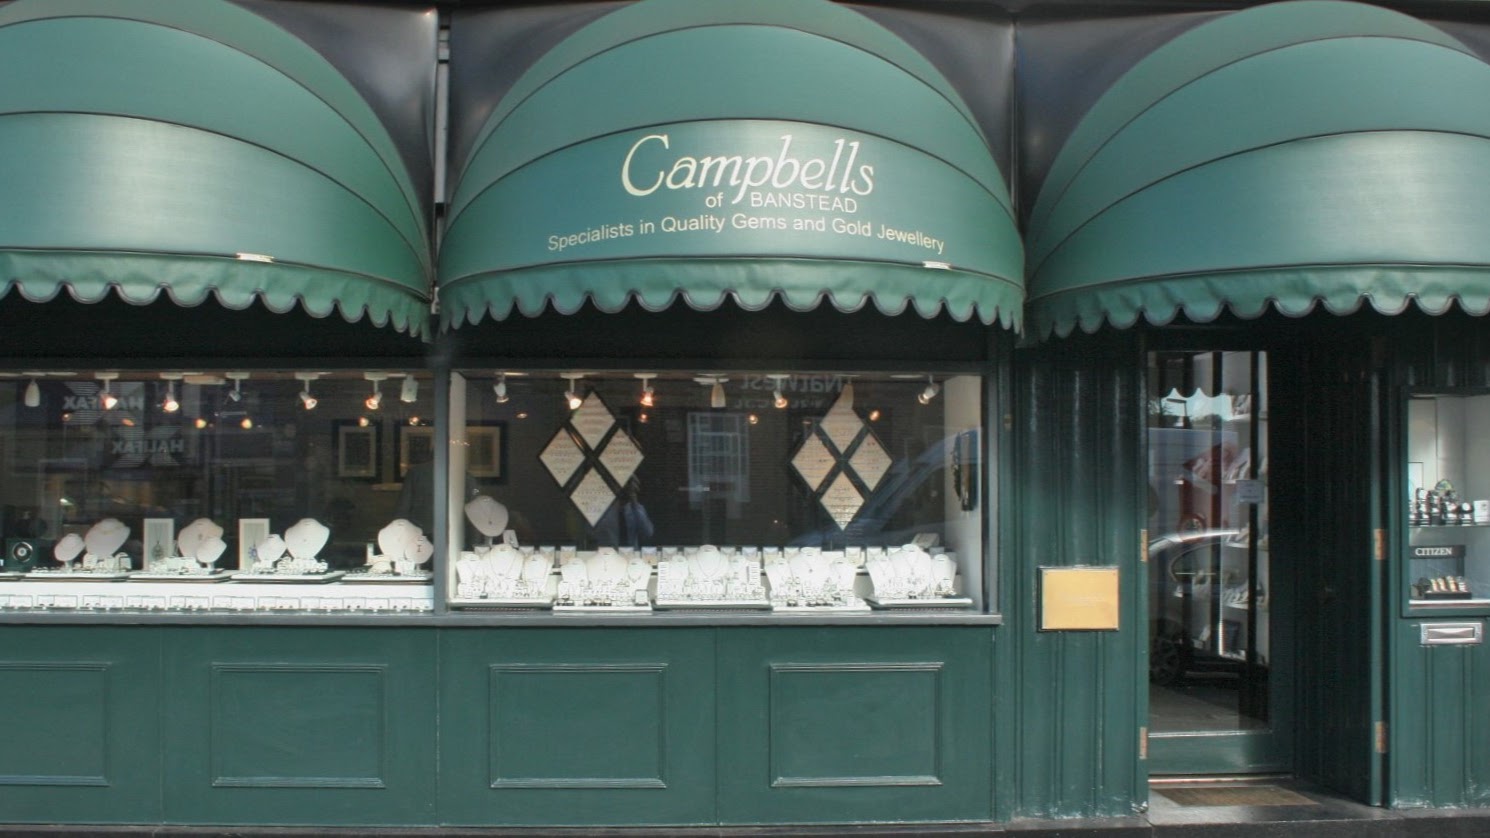 Campbells Of Banstead Ltd